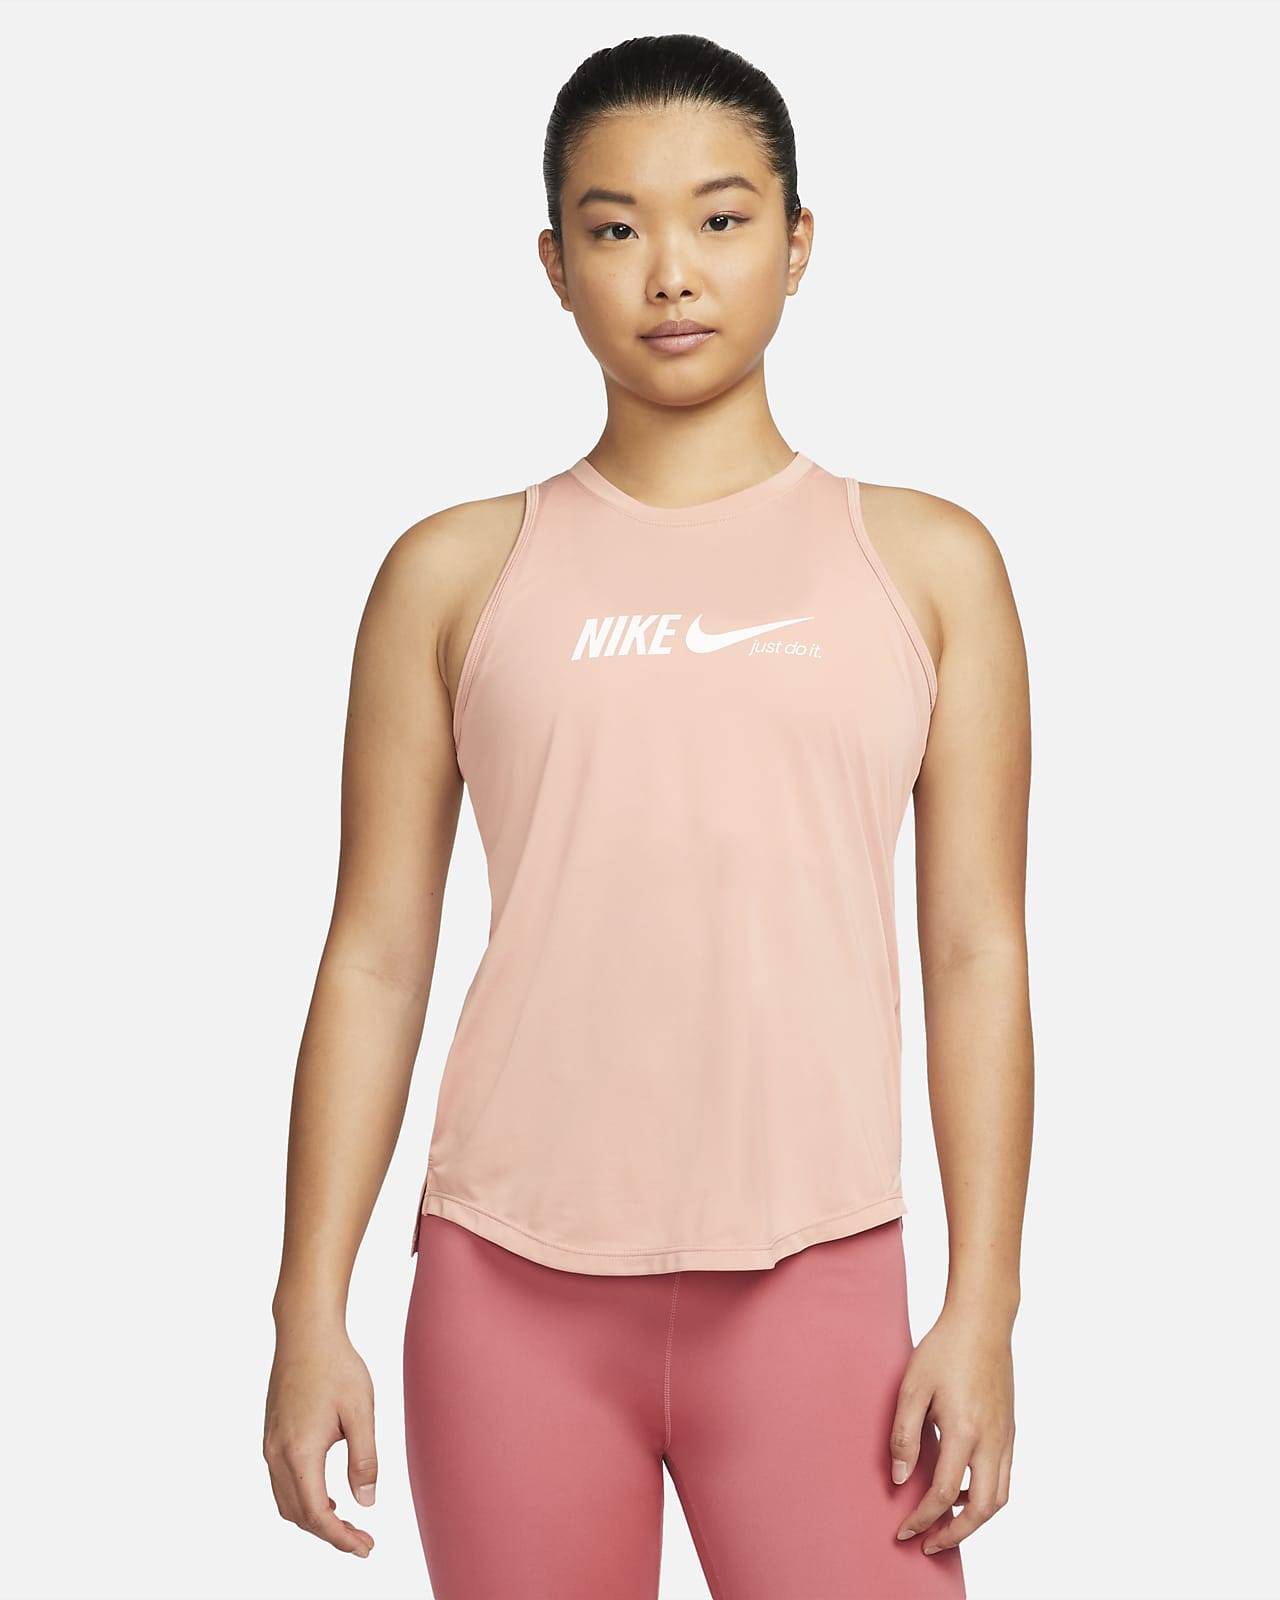 Nike Dri-FIT One 女款圖樣訓練背心